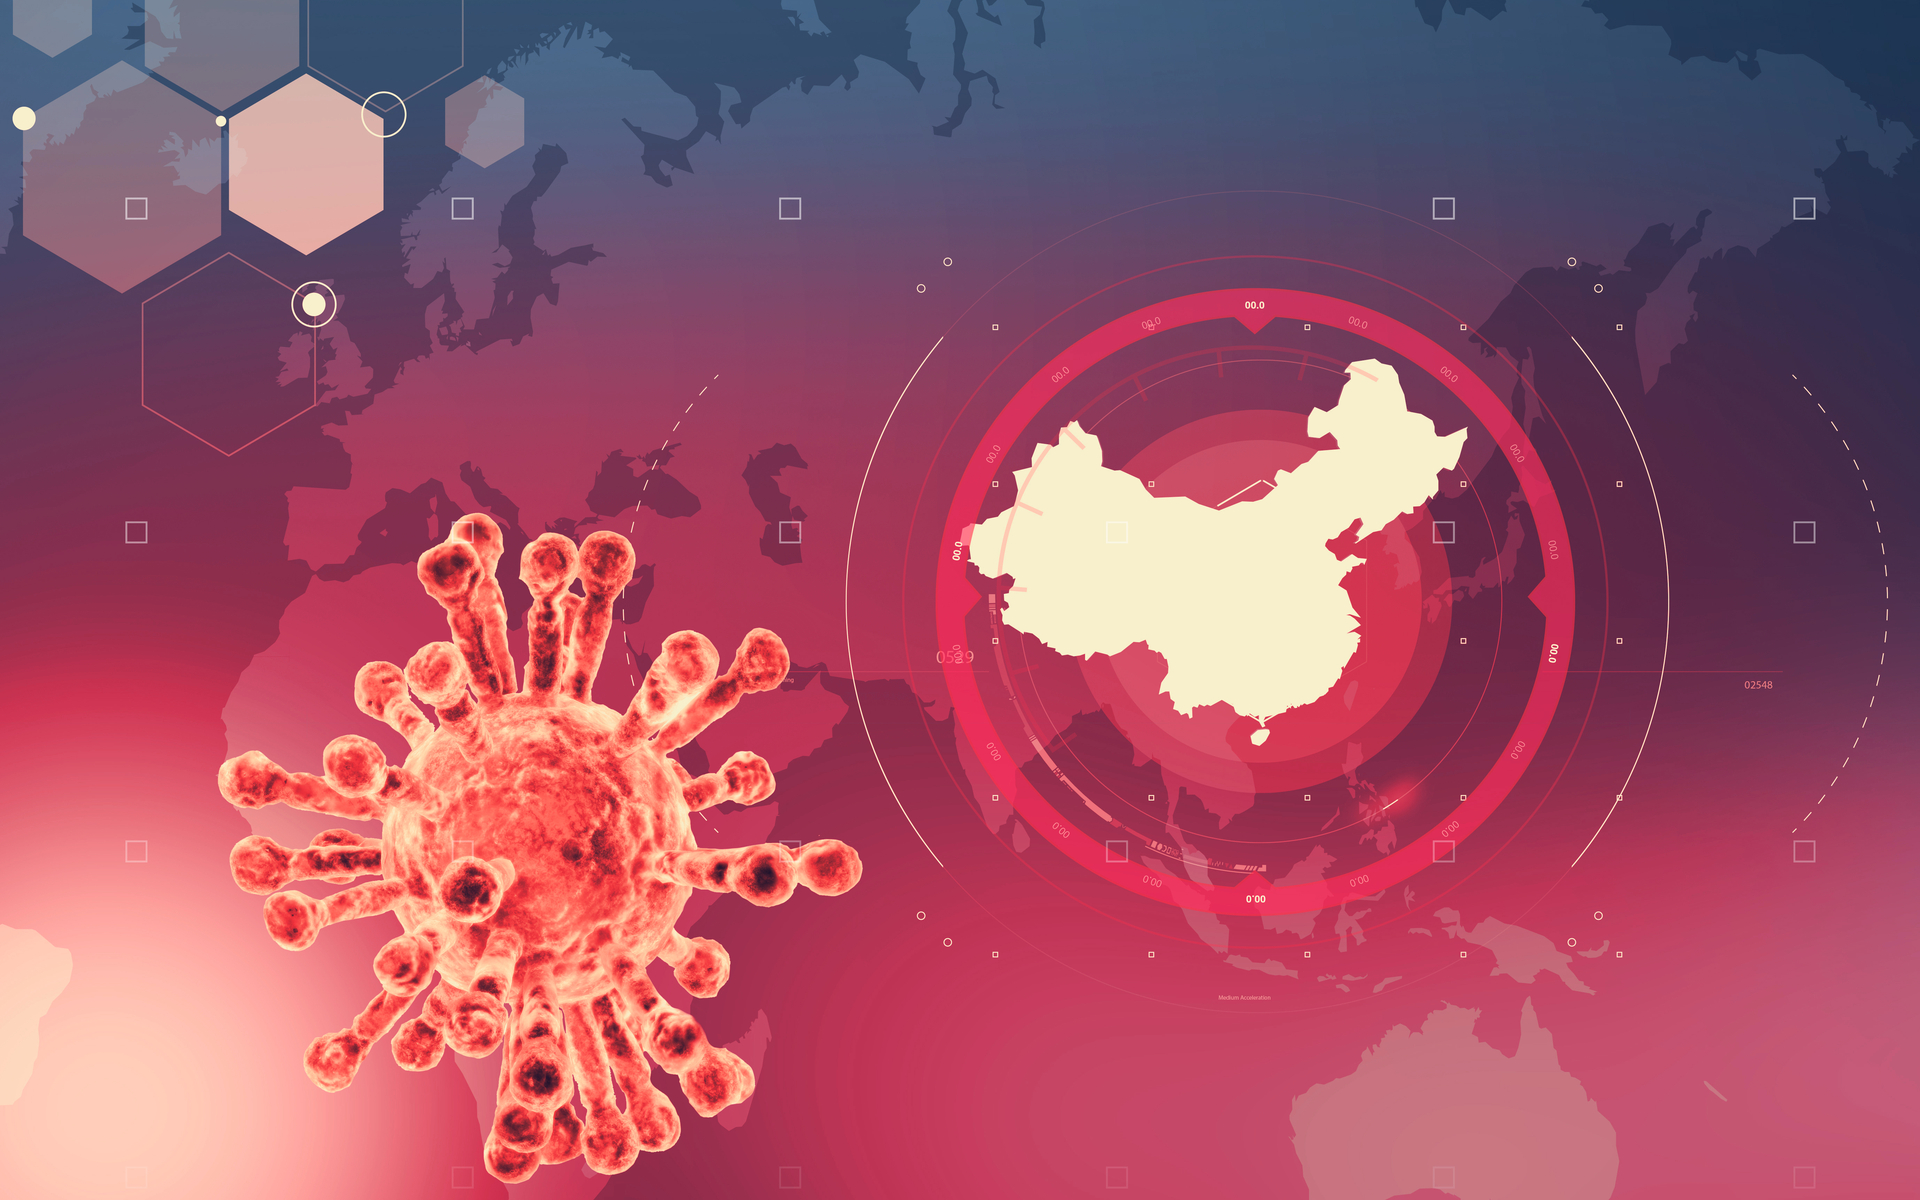 Chuyên gia bệnh truyền nhiễm giải thích về sự lây lan và phát triển của virus 2019-nCoV